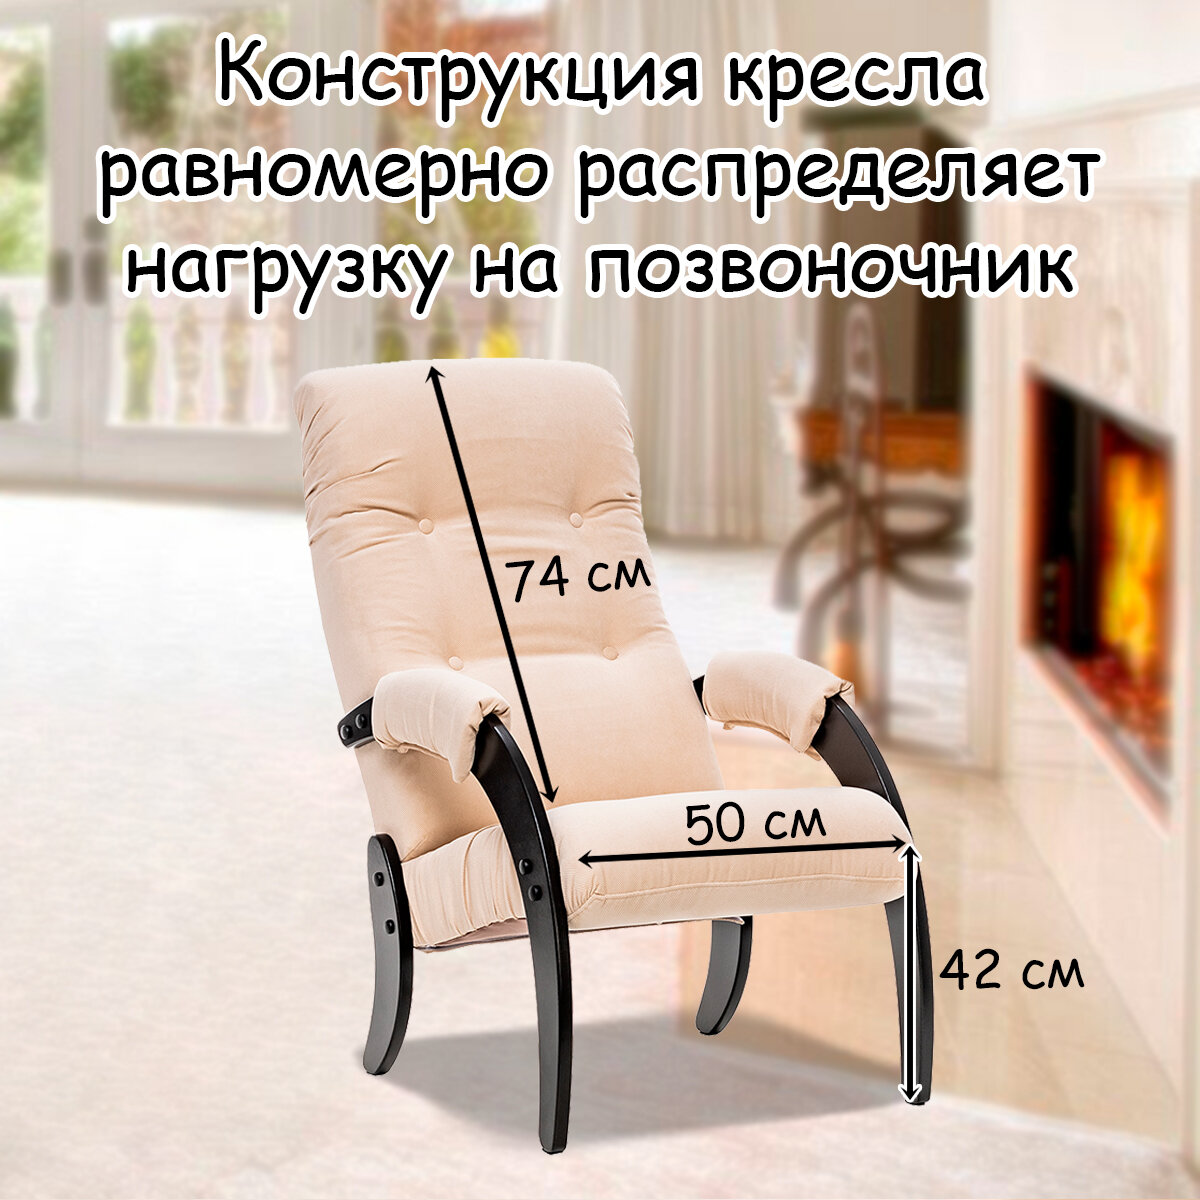 Кресло для взрослых 56х79х96 см, модель 61, verona, цвет: Vanilla (бежевый), каркас: Venge (черный) - фотография № 2